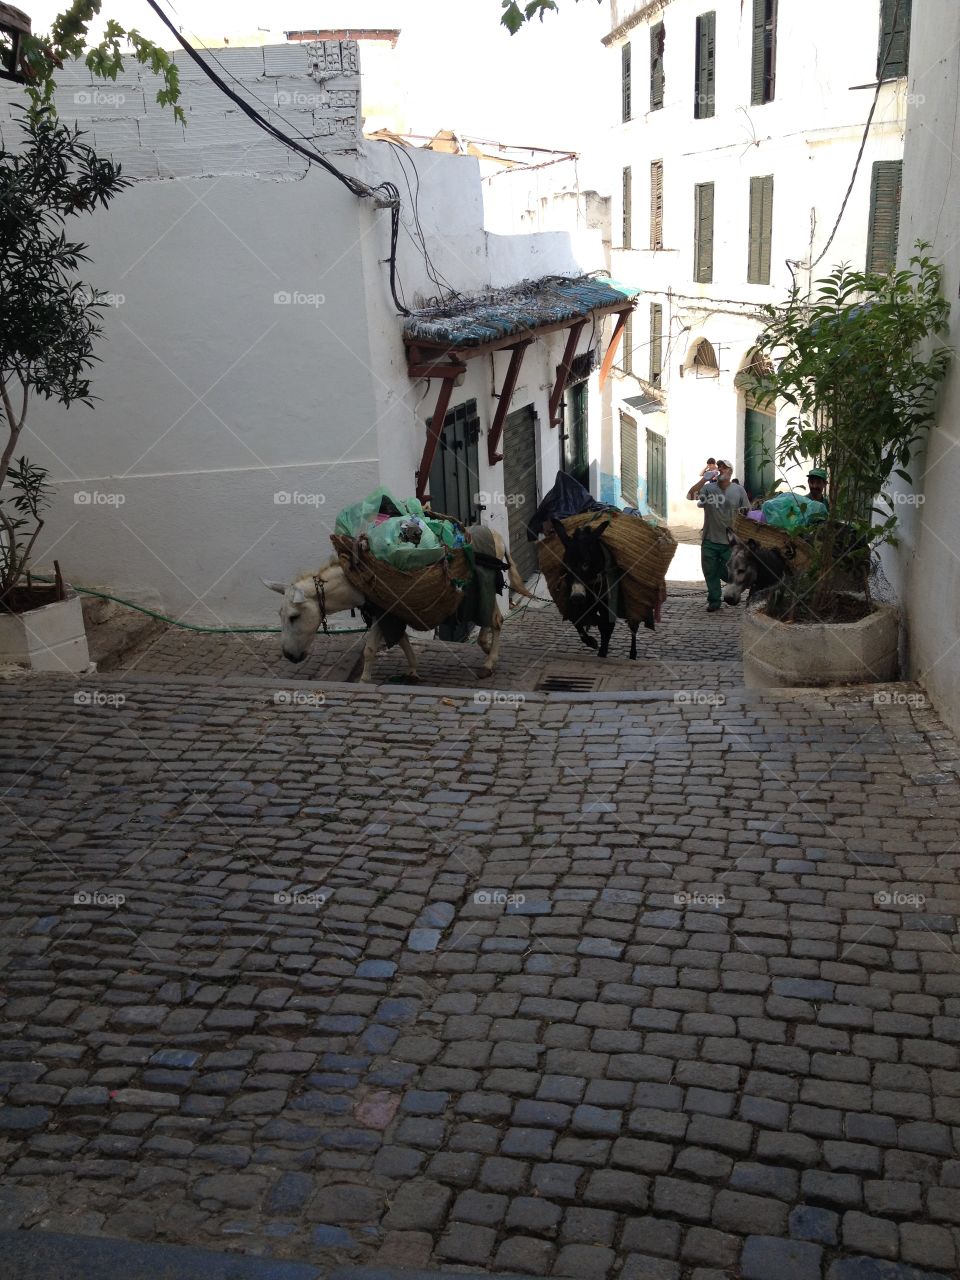 Donkeys picking up trash, Algiers